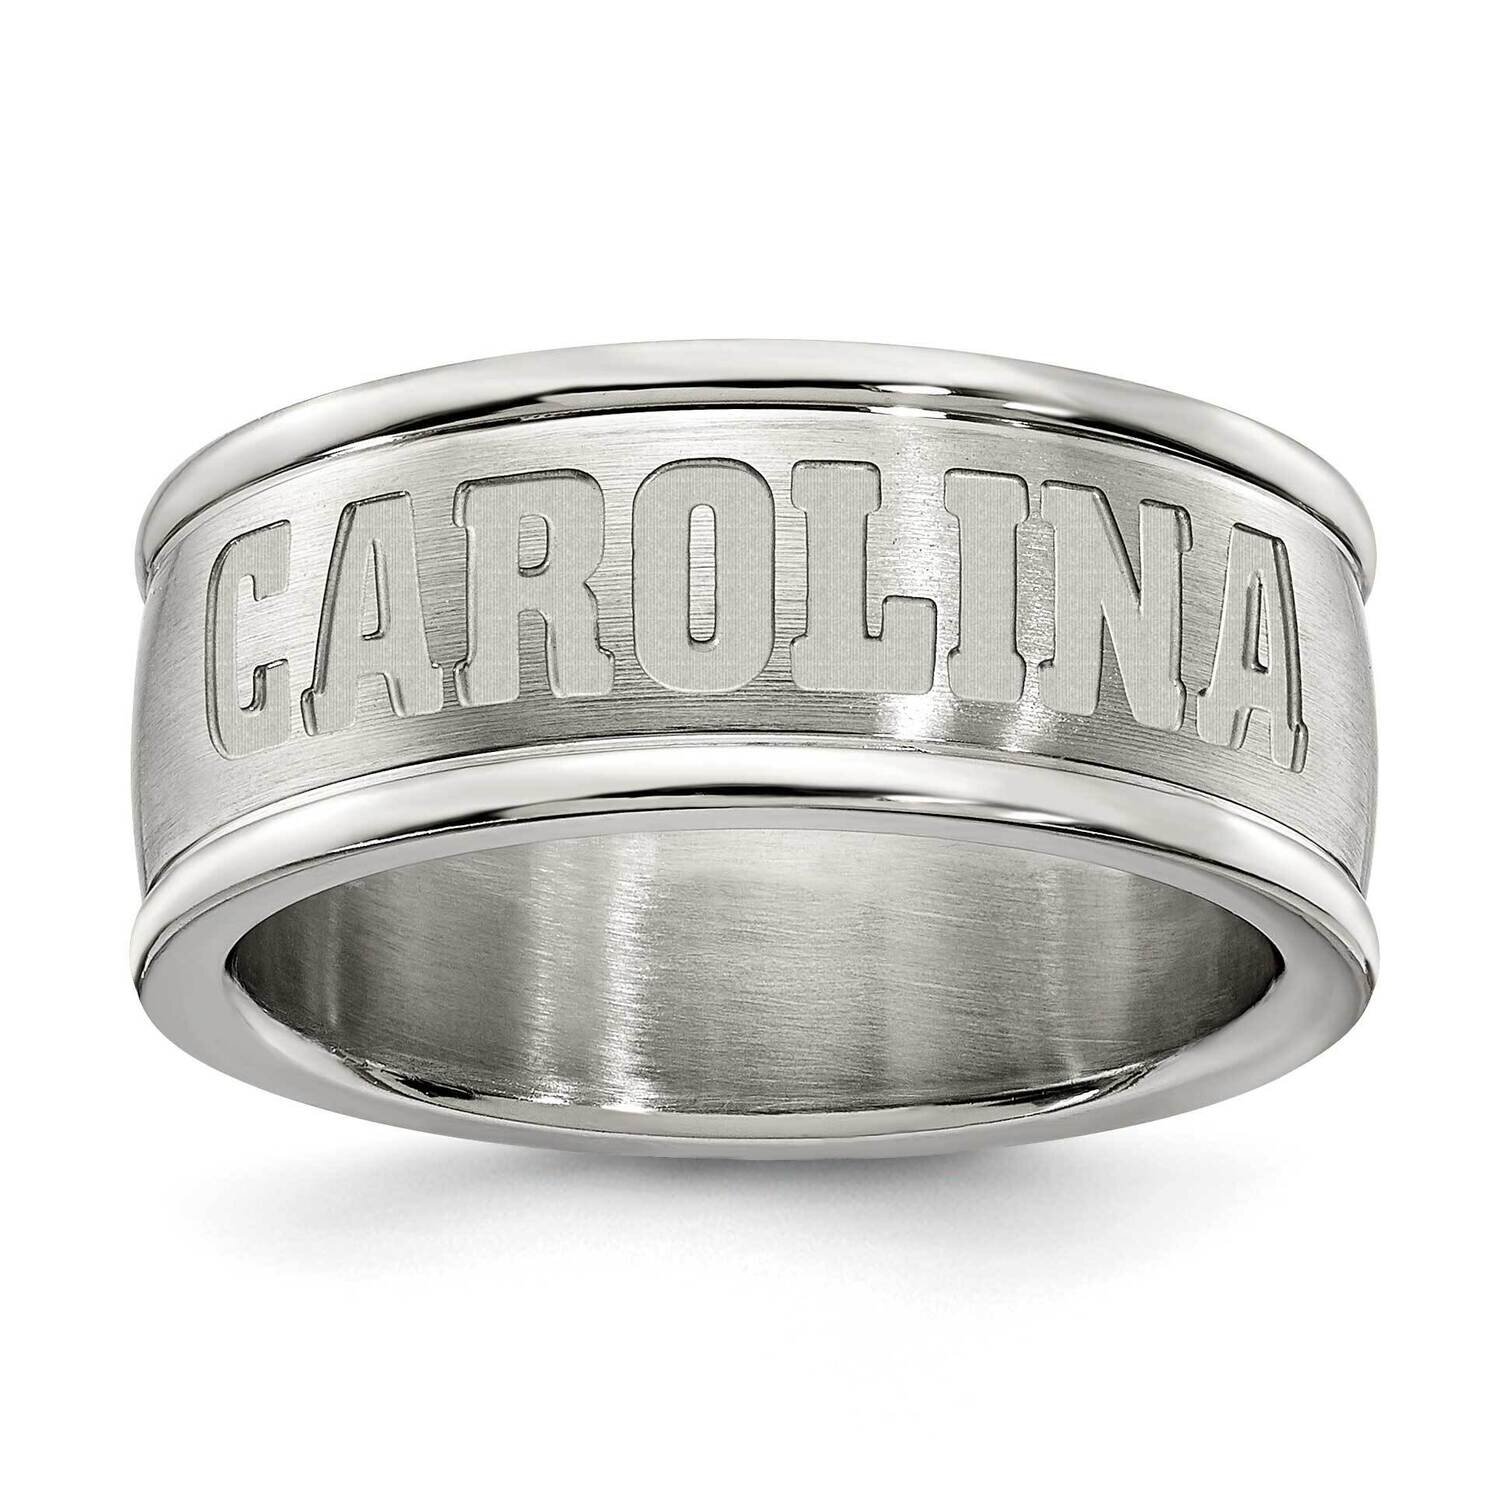 University Of So Carolina Logo Band Ring Stainless Steel USO335-SZ6